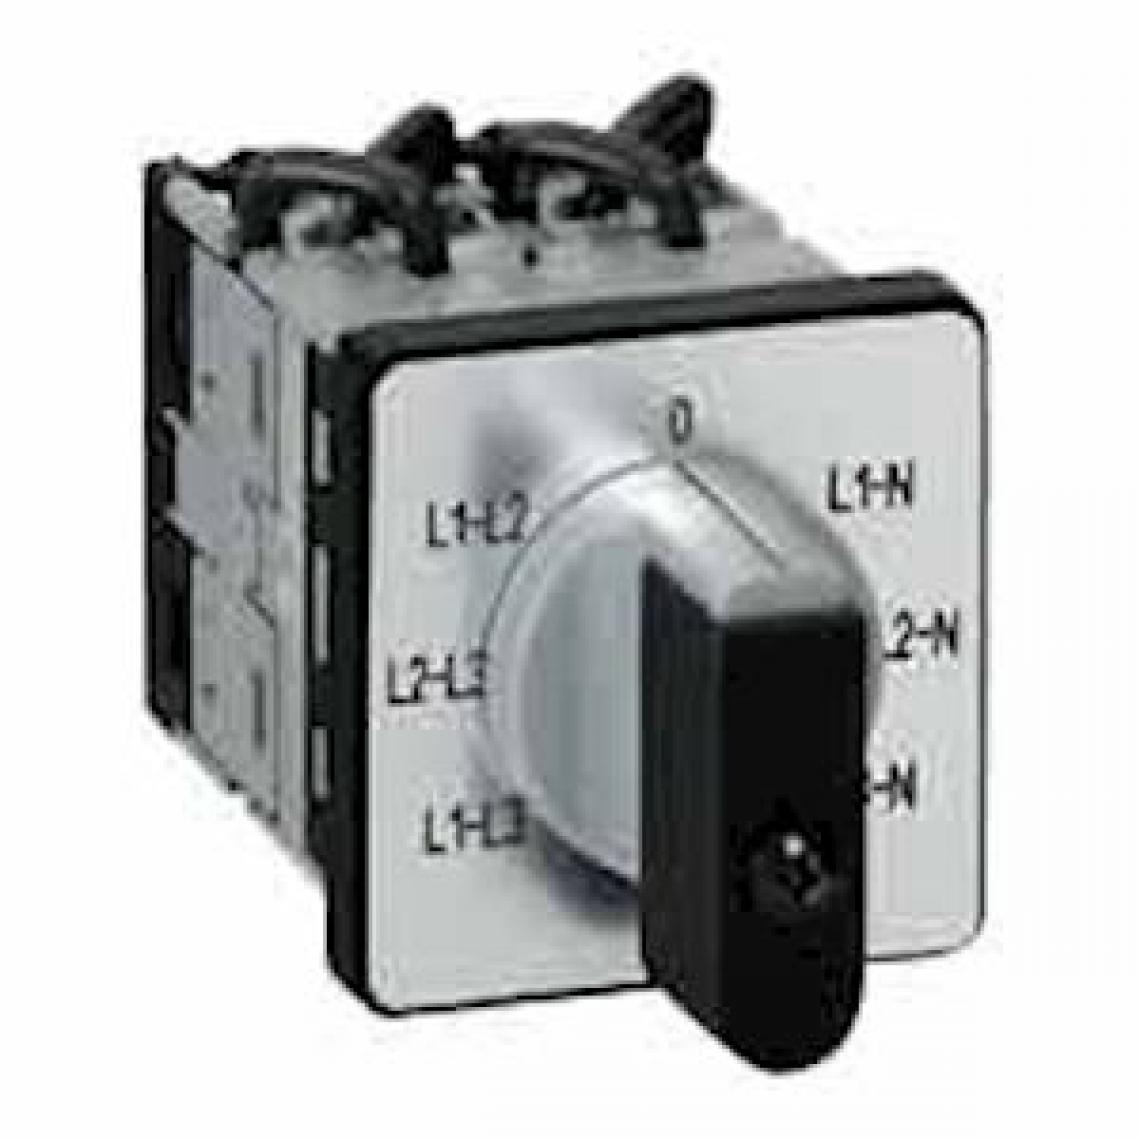 Legrand - commutateur à cames de mesure voltmètre - 4 contacts - legrand 014652 - Coupe-circuits et disjoncteurs